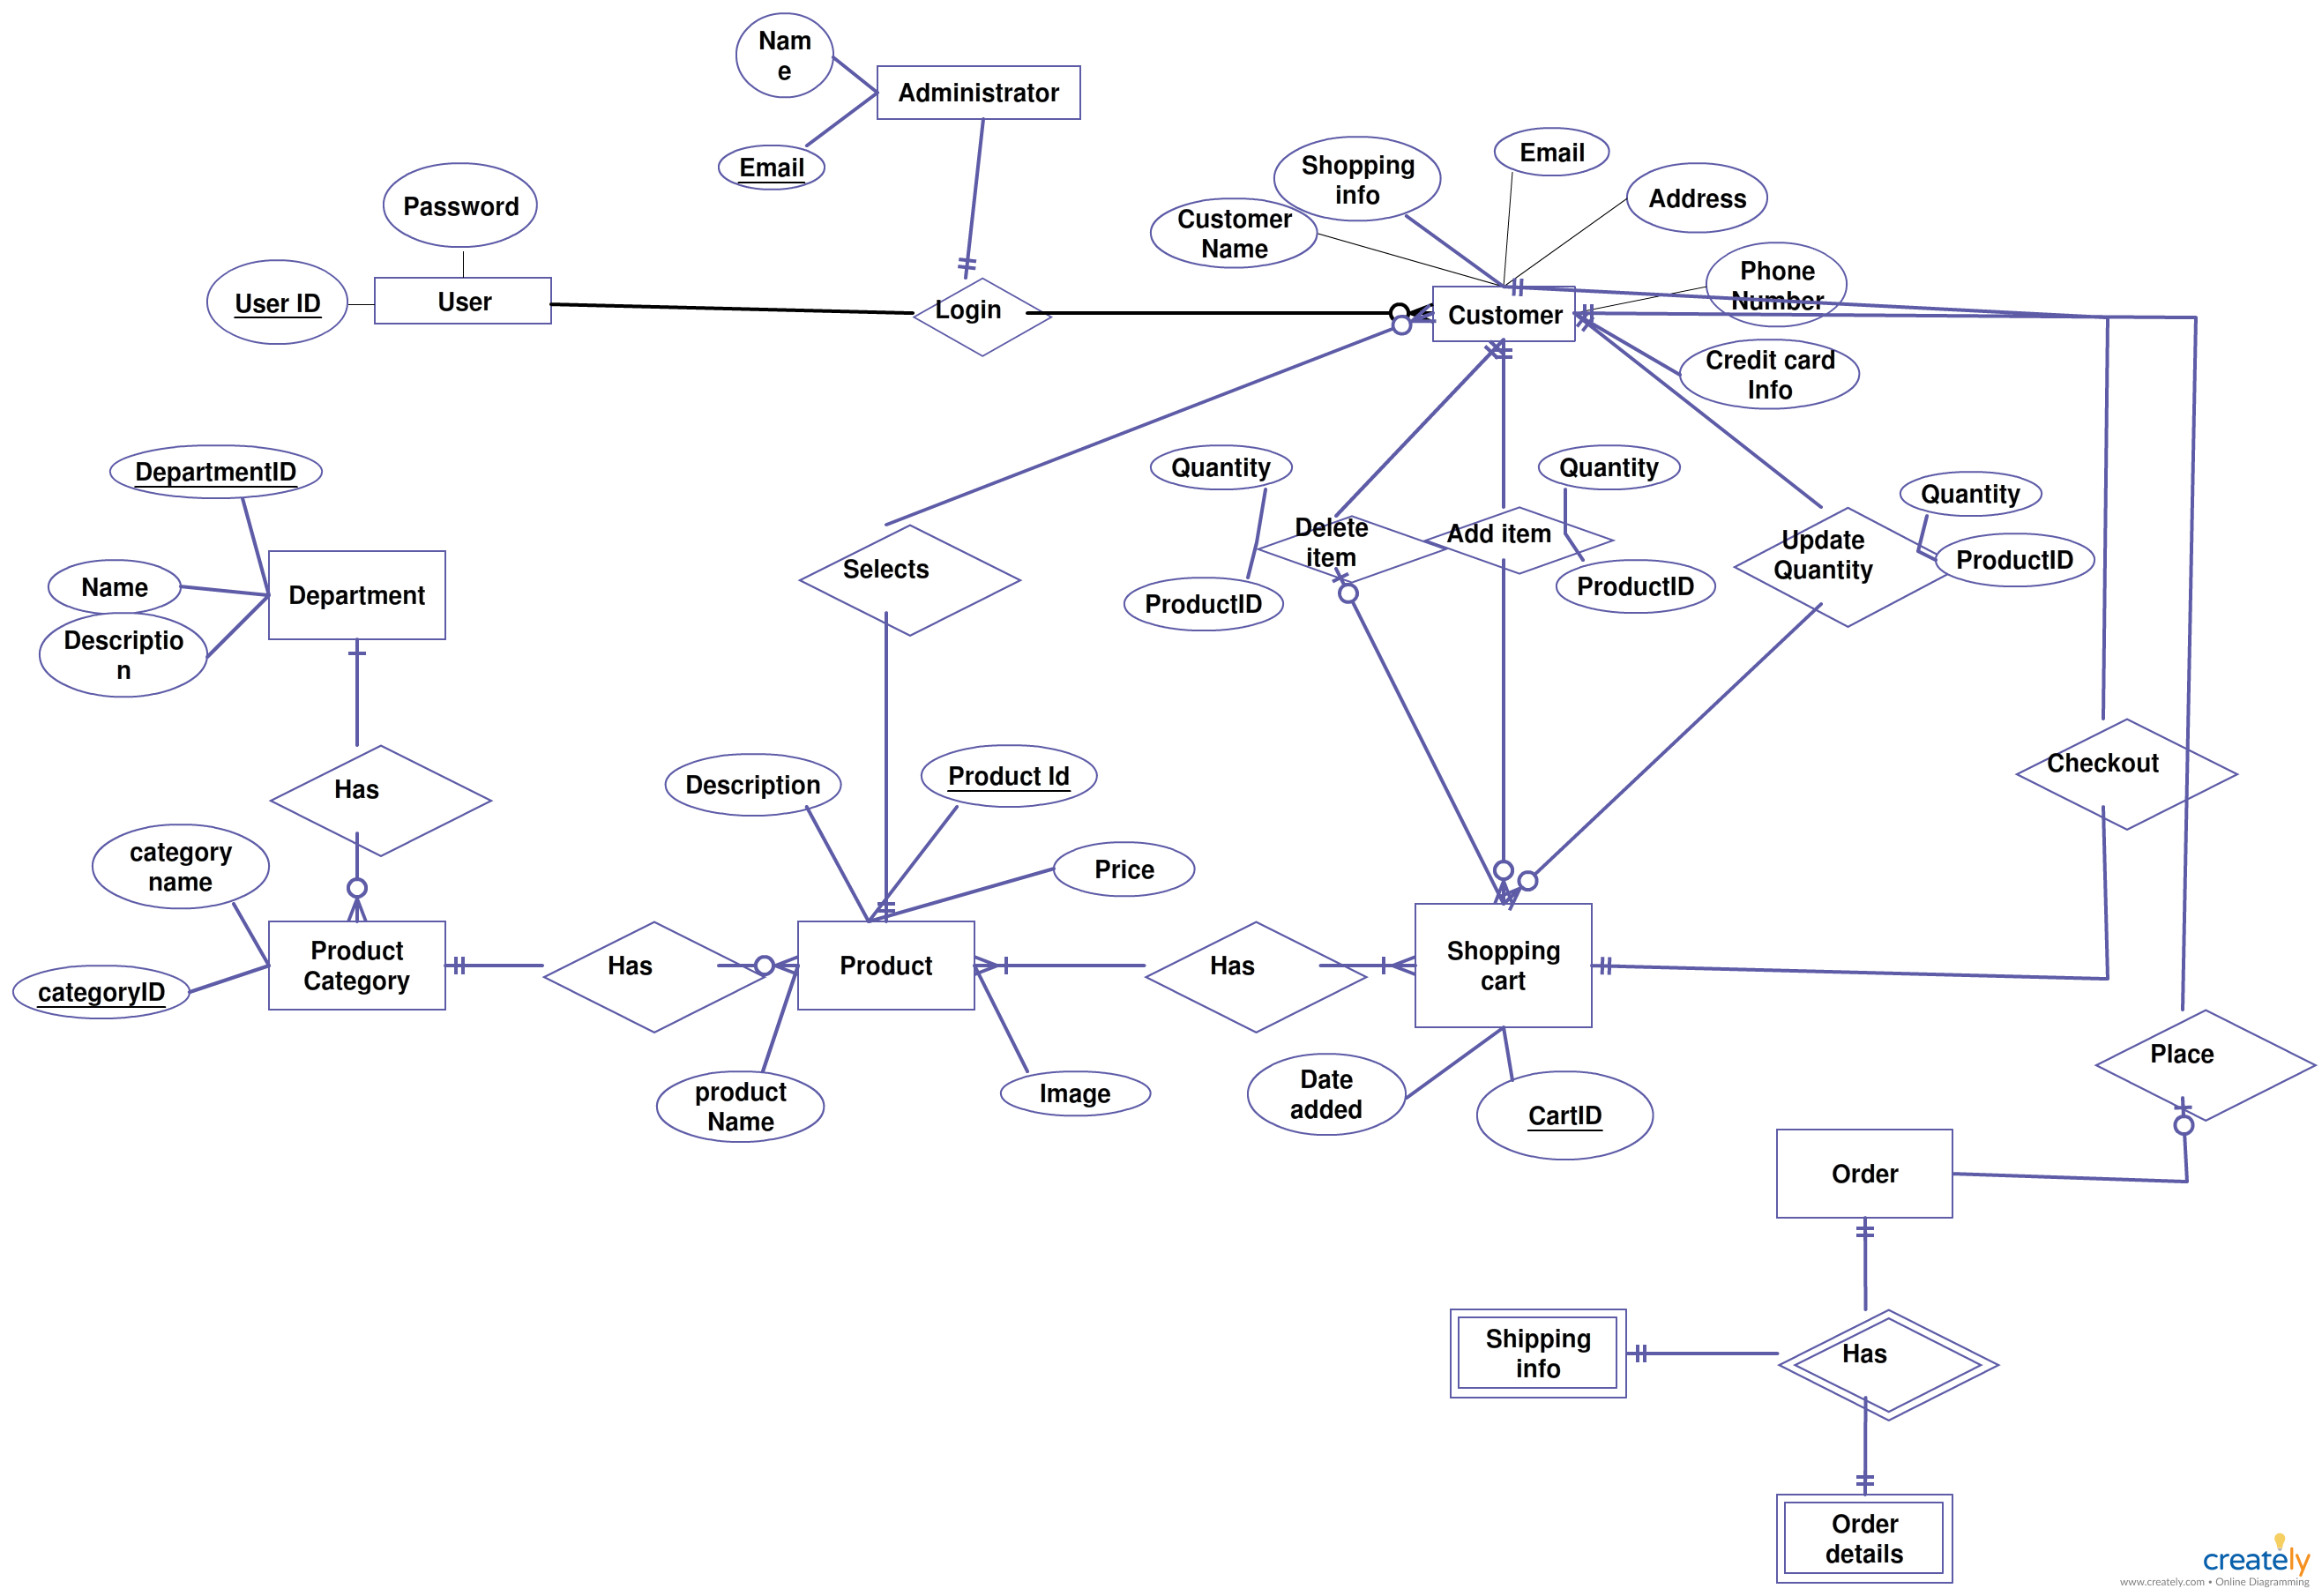 Xk_9244] Shopping Cart Entity Relationship Diagram Creately